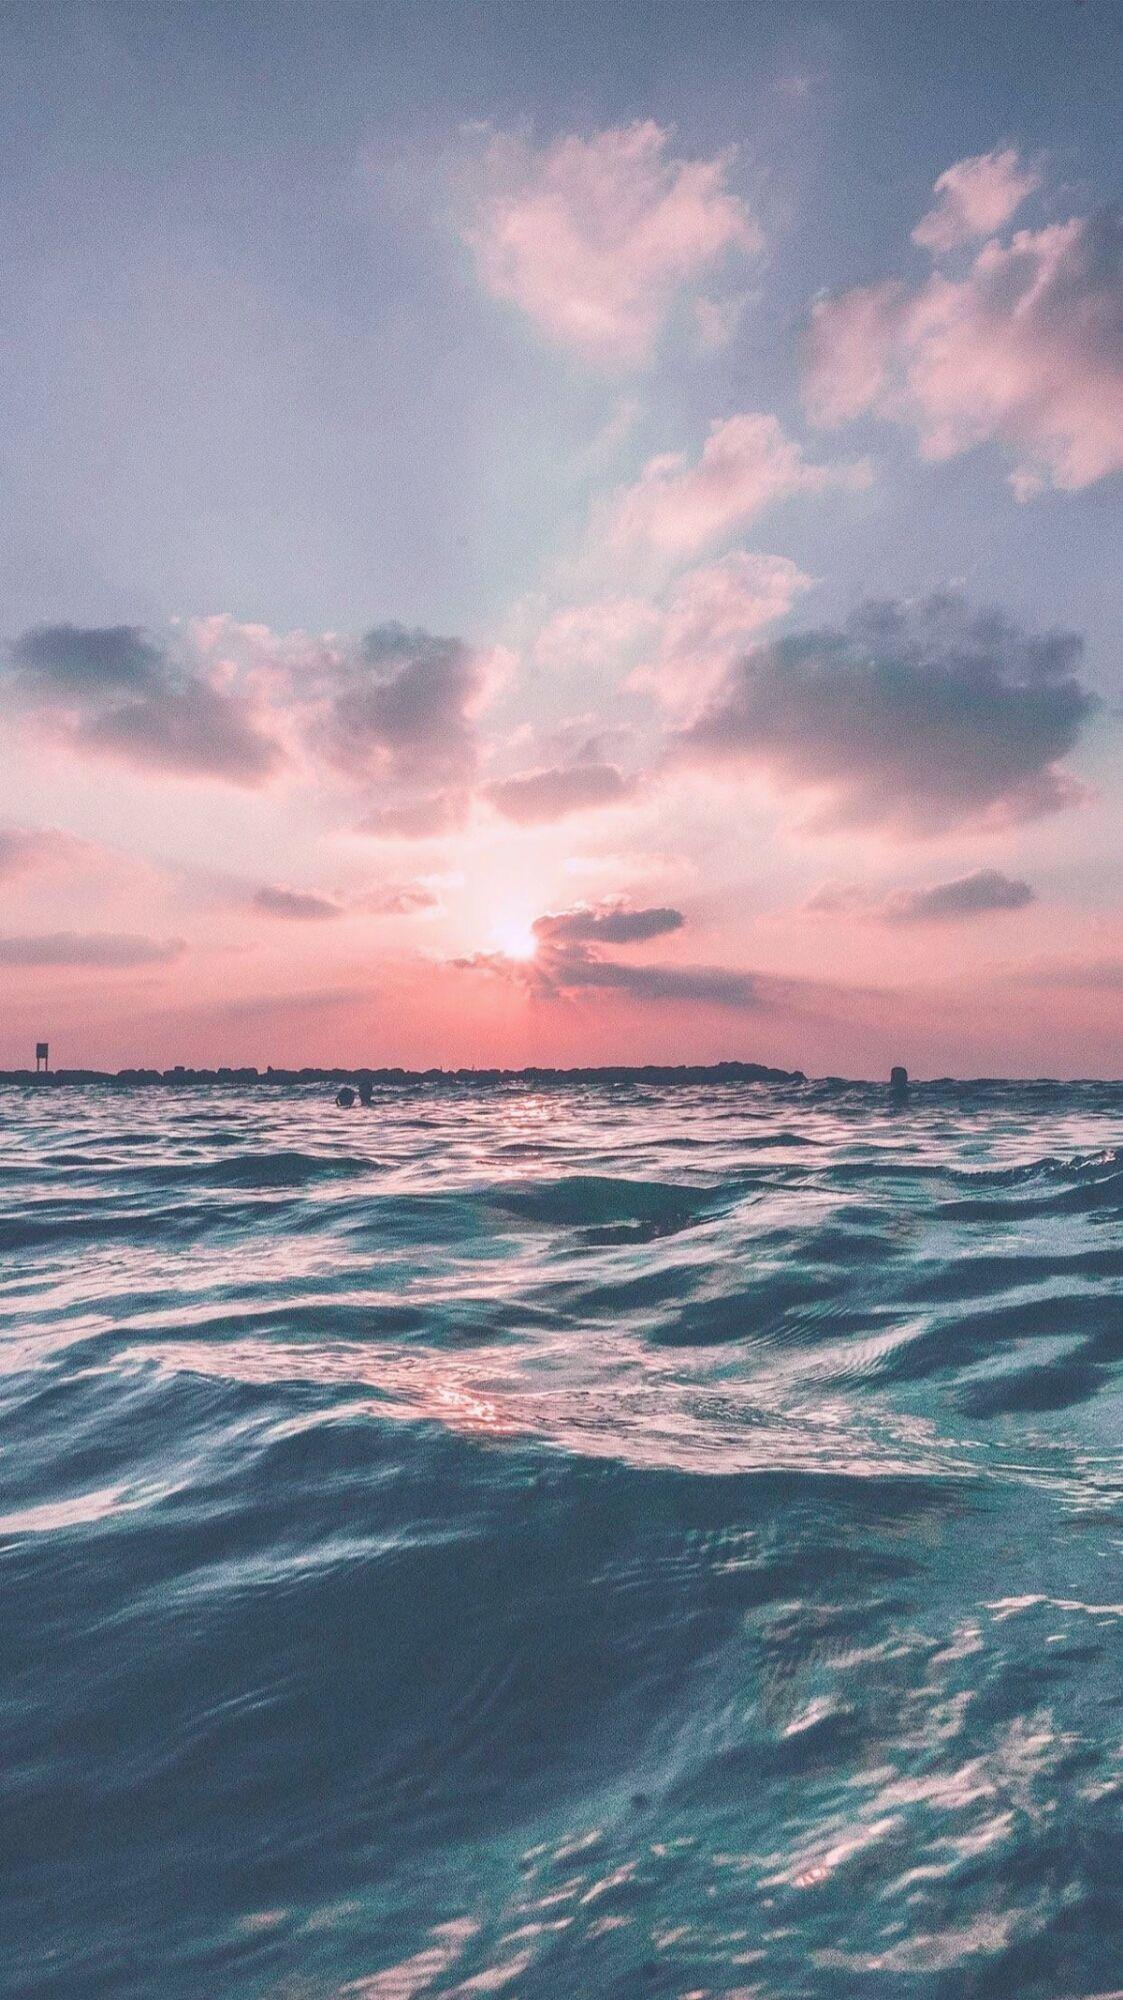 Hình nền Tumblr đại dương sẽ khiến bạn liên tưởng đến khung cảnh đầy thơ mộng của biển cả. Cảm giác thư giãn và yên tĩnh sẽ được mang đến với bức hình nền đẹp này. Chọn bức hình nền Tumblr đại dương để thay đổi không khí làm việc của bạn.